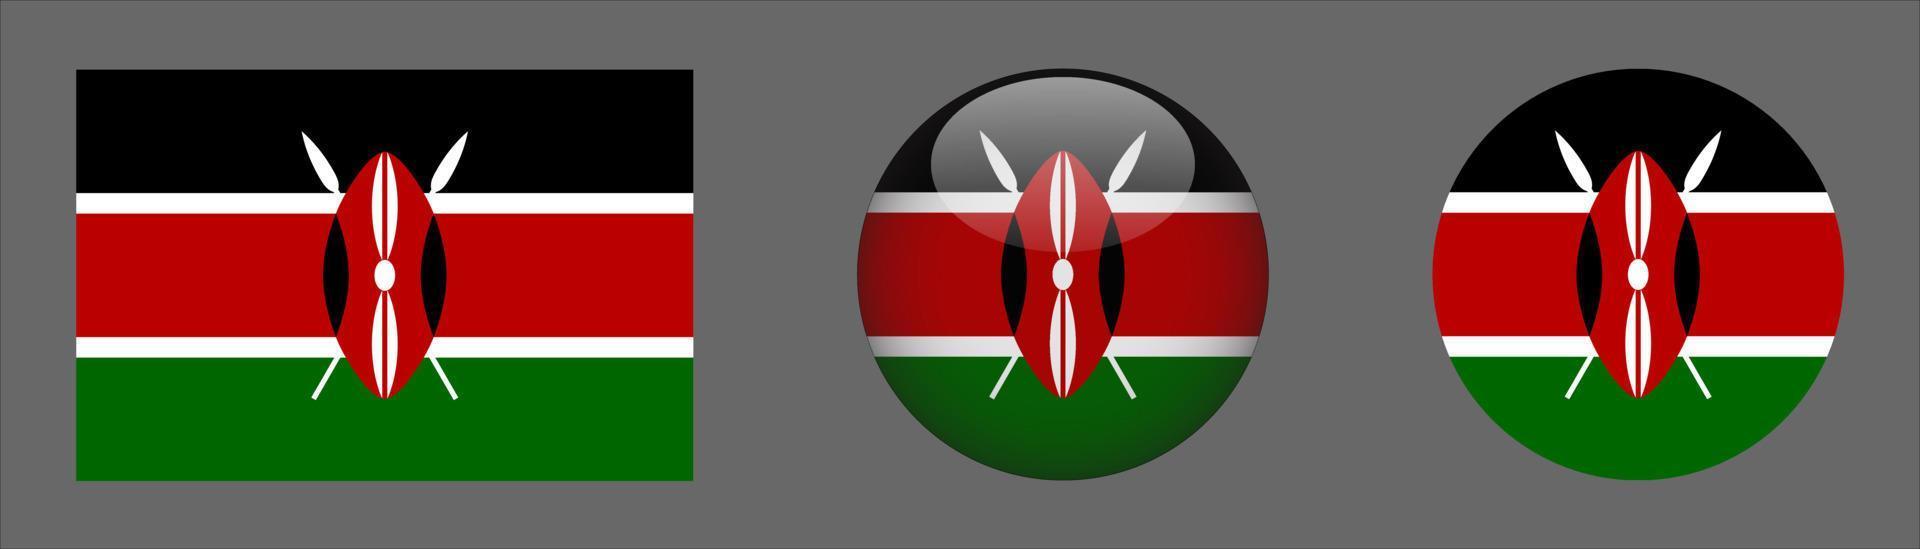 coleção do conjunto de bandeiras do Quênia, proporção do tamanho original, 3D arredondado e plano arredondado vetor